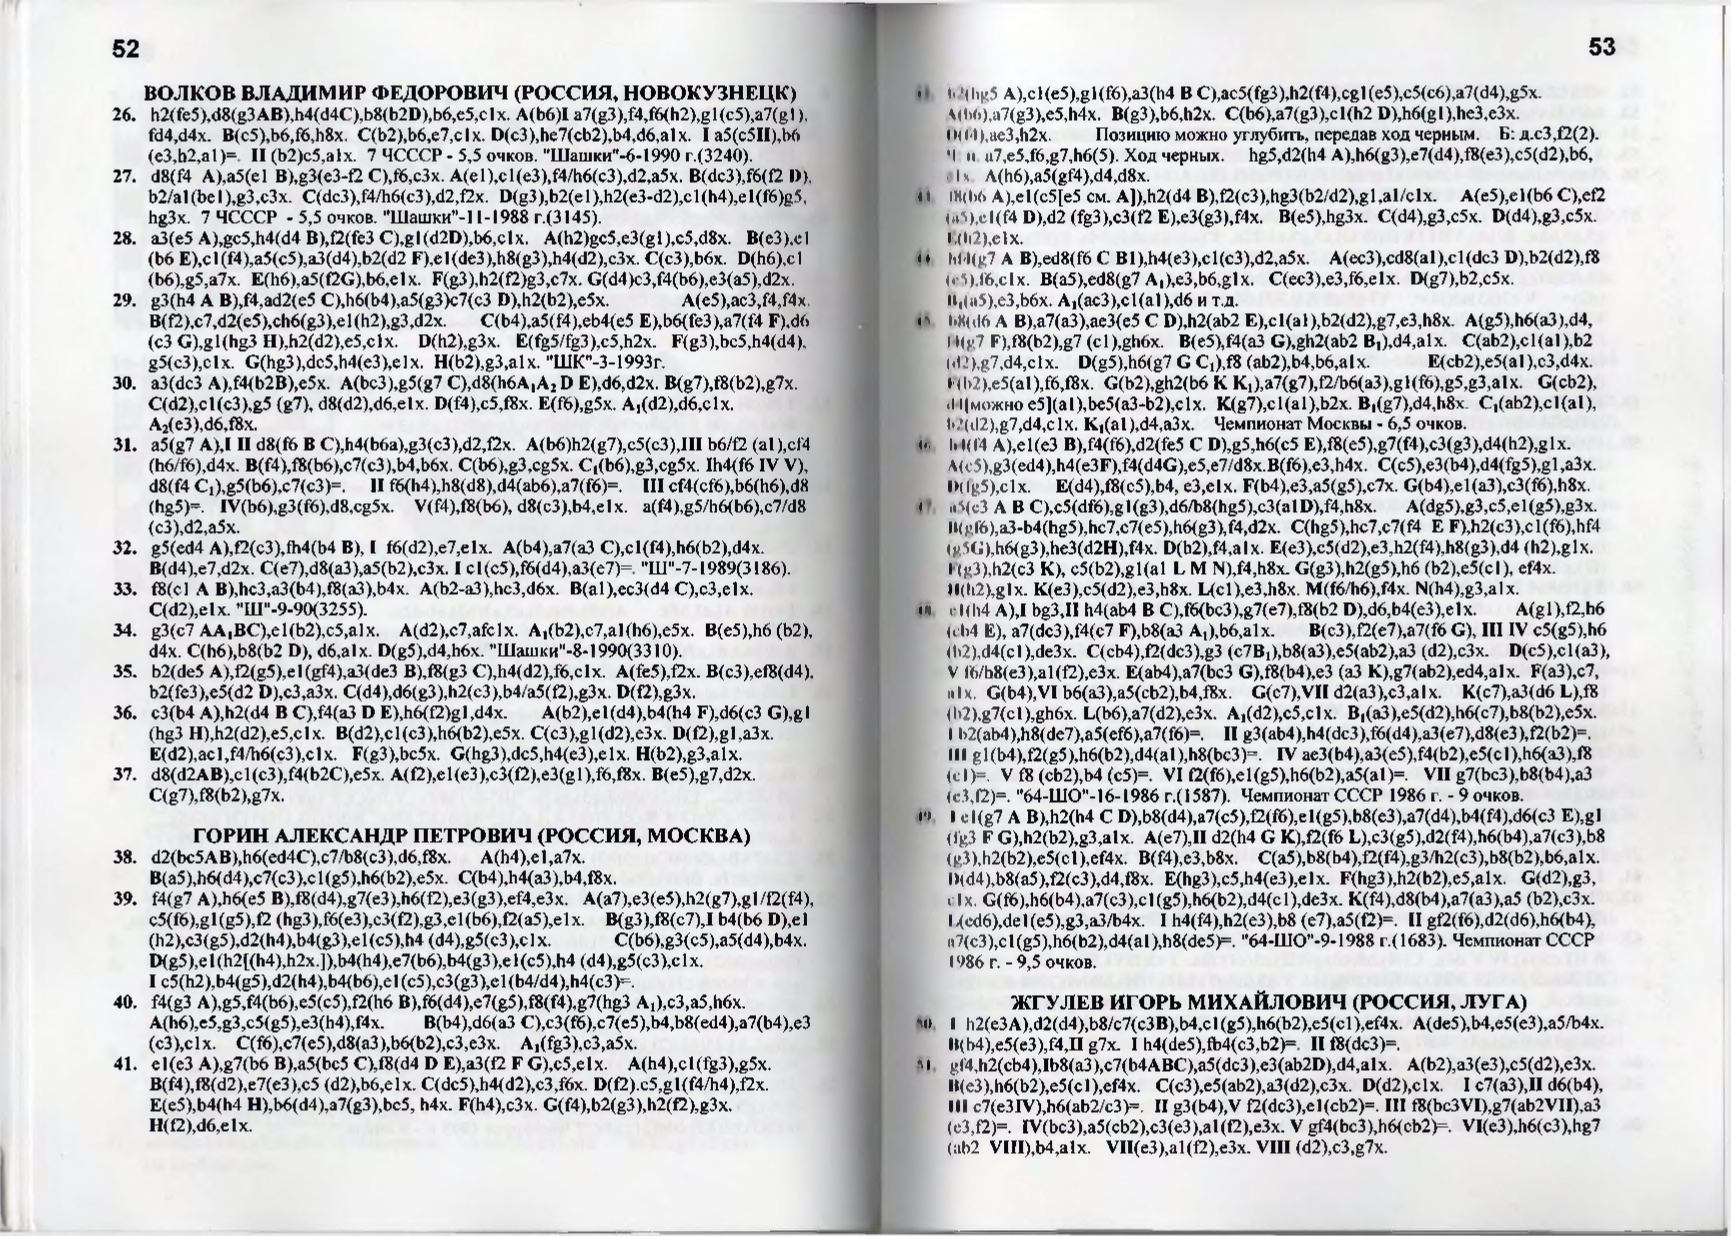 Gorin-Chempionat_mira_po_shashechnoy_kompozitsii_1994-339_page-0028.jpg